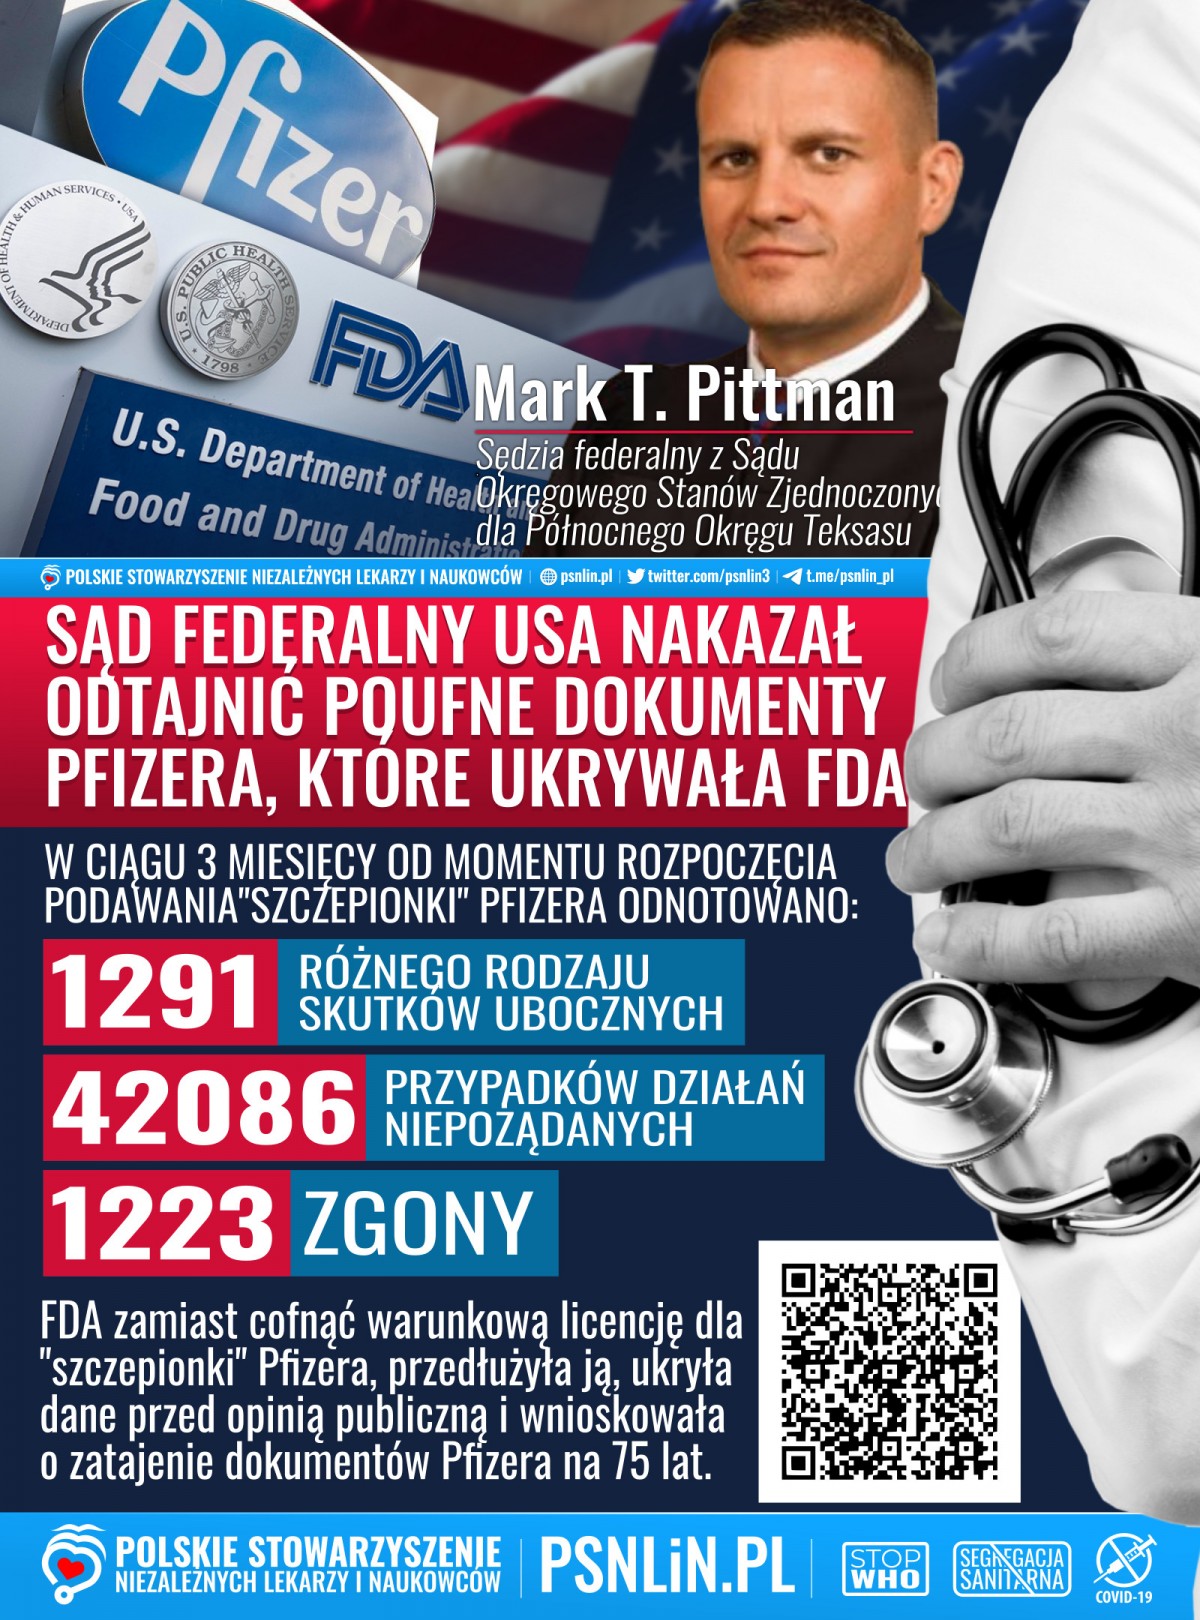 Memy_PSNLiN - Sąd federalny USA nakazał upublicznić tajne dokumenty Pfizera które ukrywała FDA